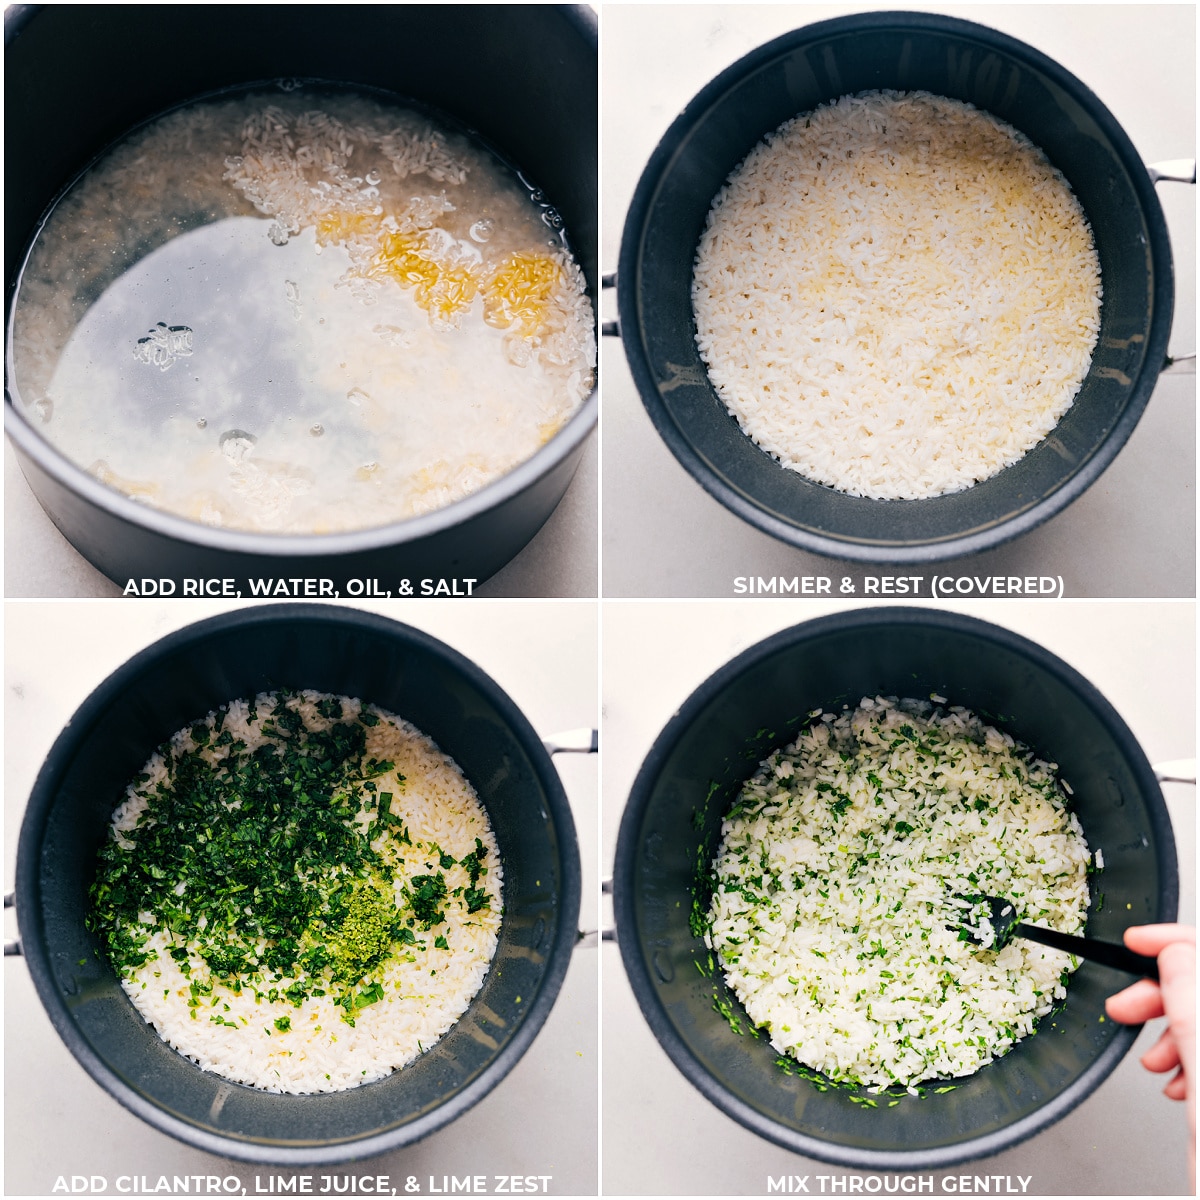 Reis, Wasser, Öl und Salz werden in einen Topf gegeben und gekocht, dann werden Koriander, Limettensaft und Limettenschale für diesen Koriander-Limetten-Reis vermischt.